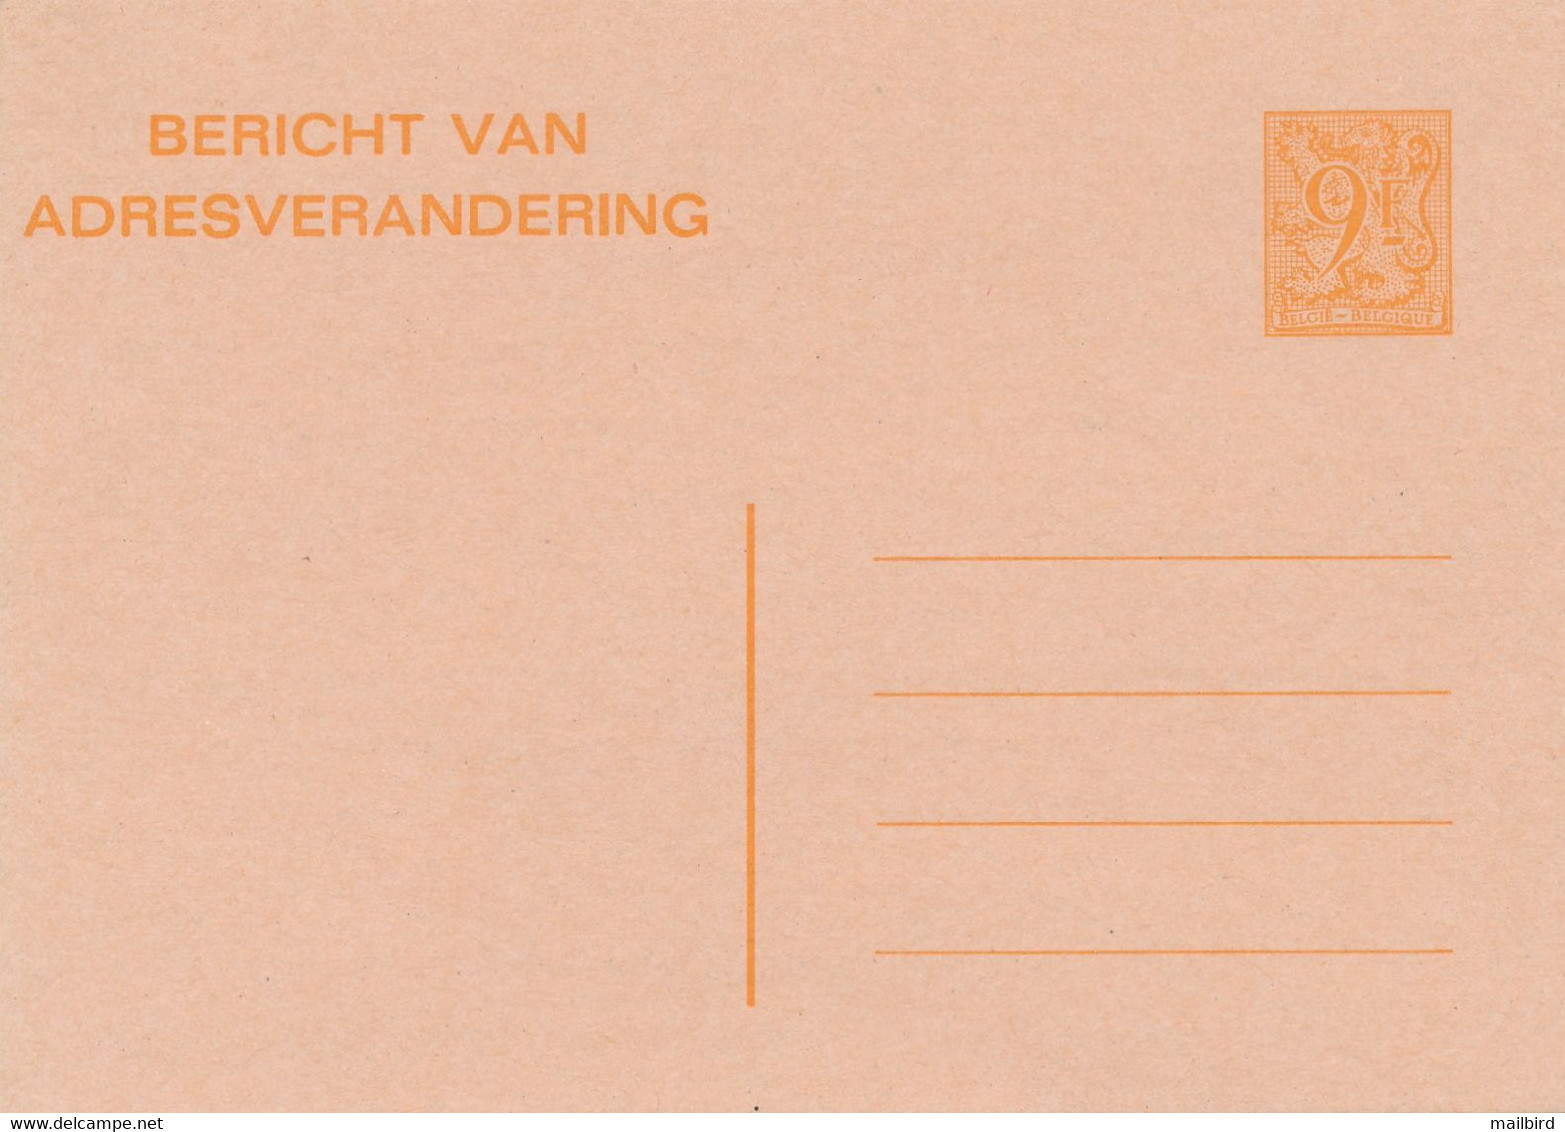 CA/AV 26 F- 9,00fr Orange/oranje -Avis De Changement D'Adresse/Bericht Van Adresverandering-1985- NEUF / NIEUW - Addr. Chang.